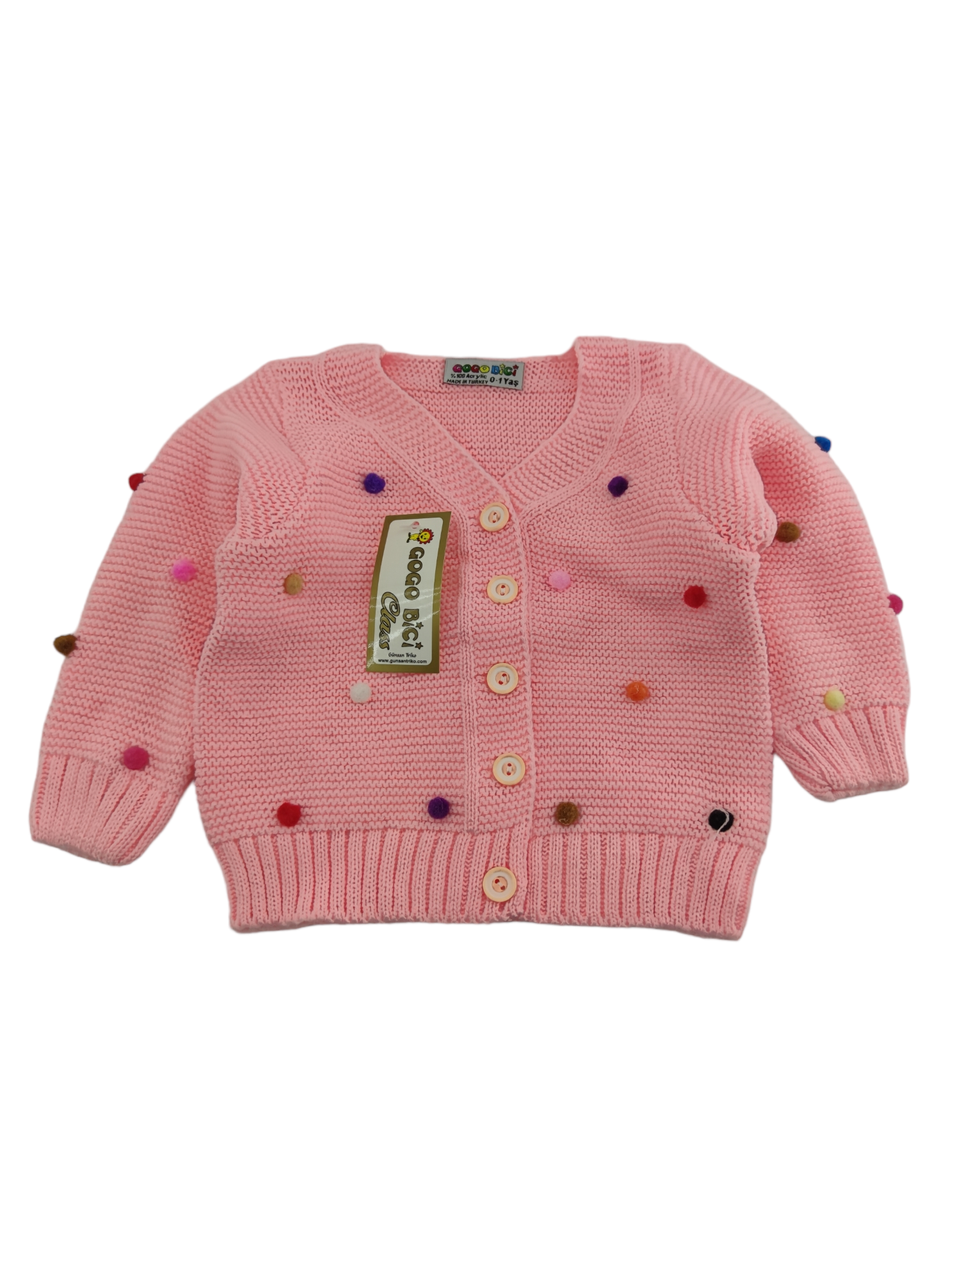 Дитячий светр Туреччина 1, 2, 3, 4 роки для дівчинки на ґудзиках рожевий (ФД22)